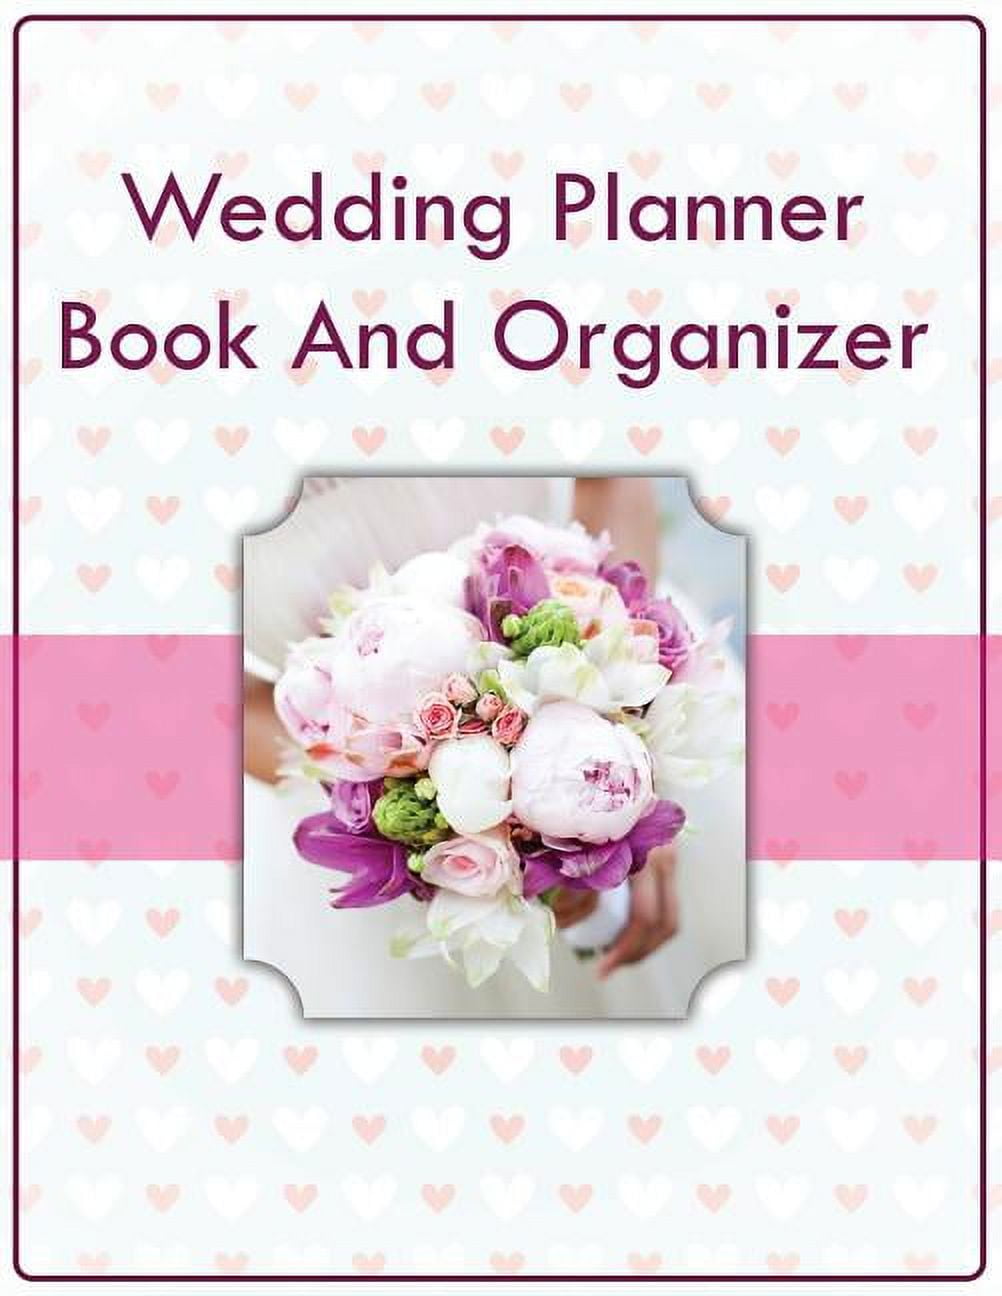 The Wedding Planner & Organizer